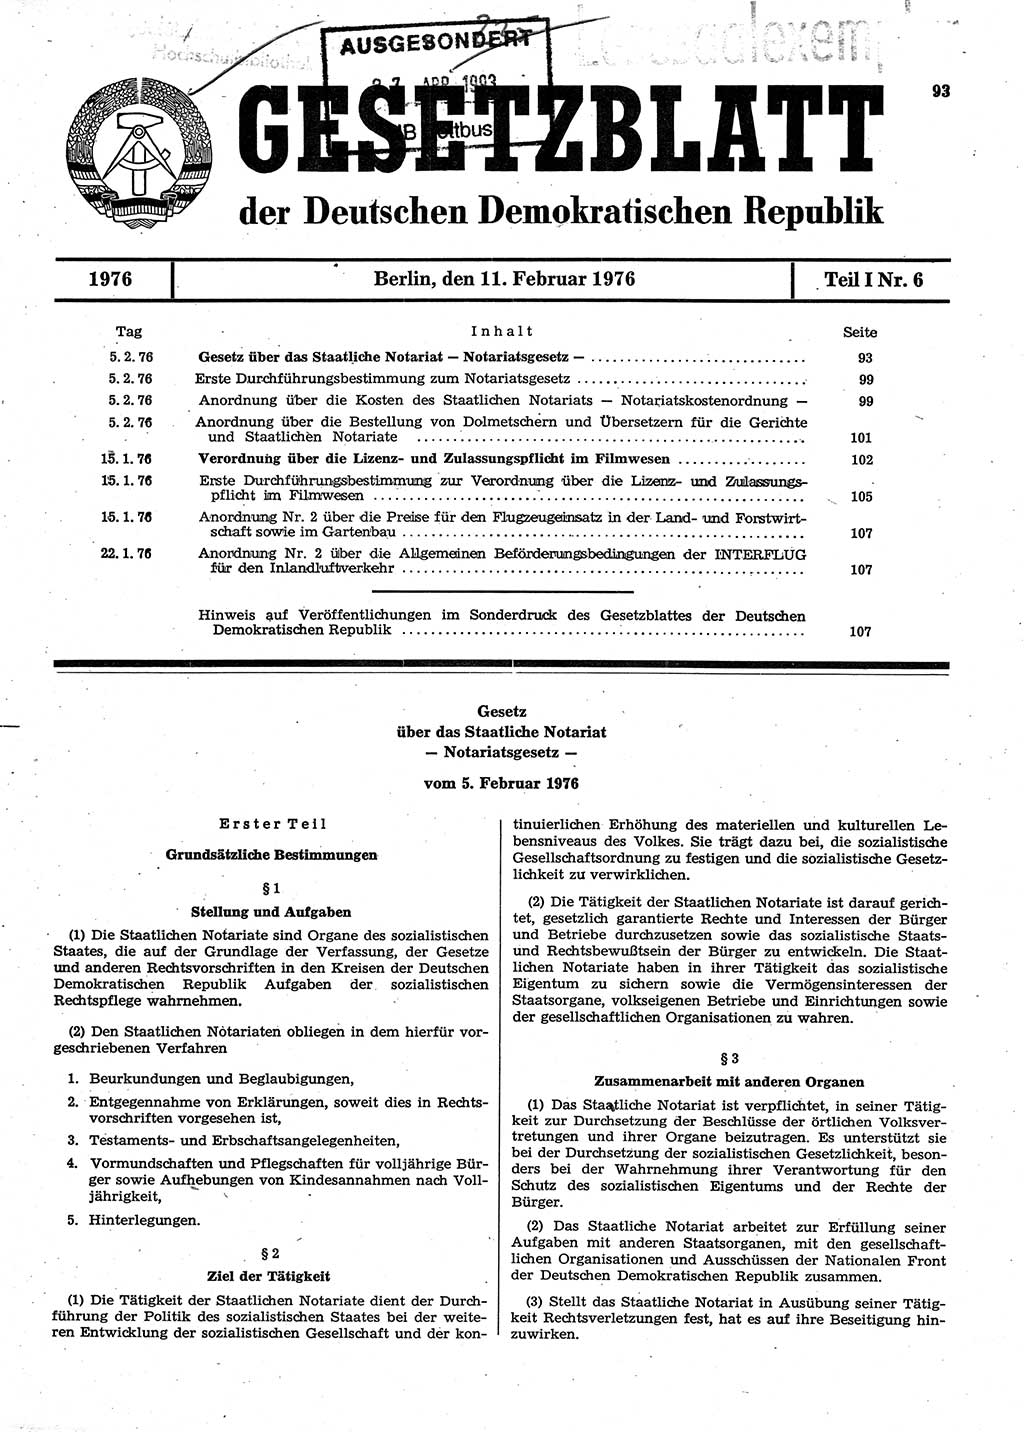 Gesetzblatt (GBl.) der Deutschen Demokratischen Republik (DDR) Teil Ⅰ 1976, Seite 93 (GBl. DDR Ⅰ 1976, S. 93)